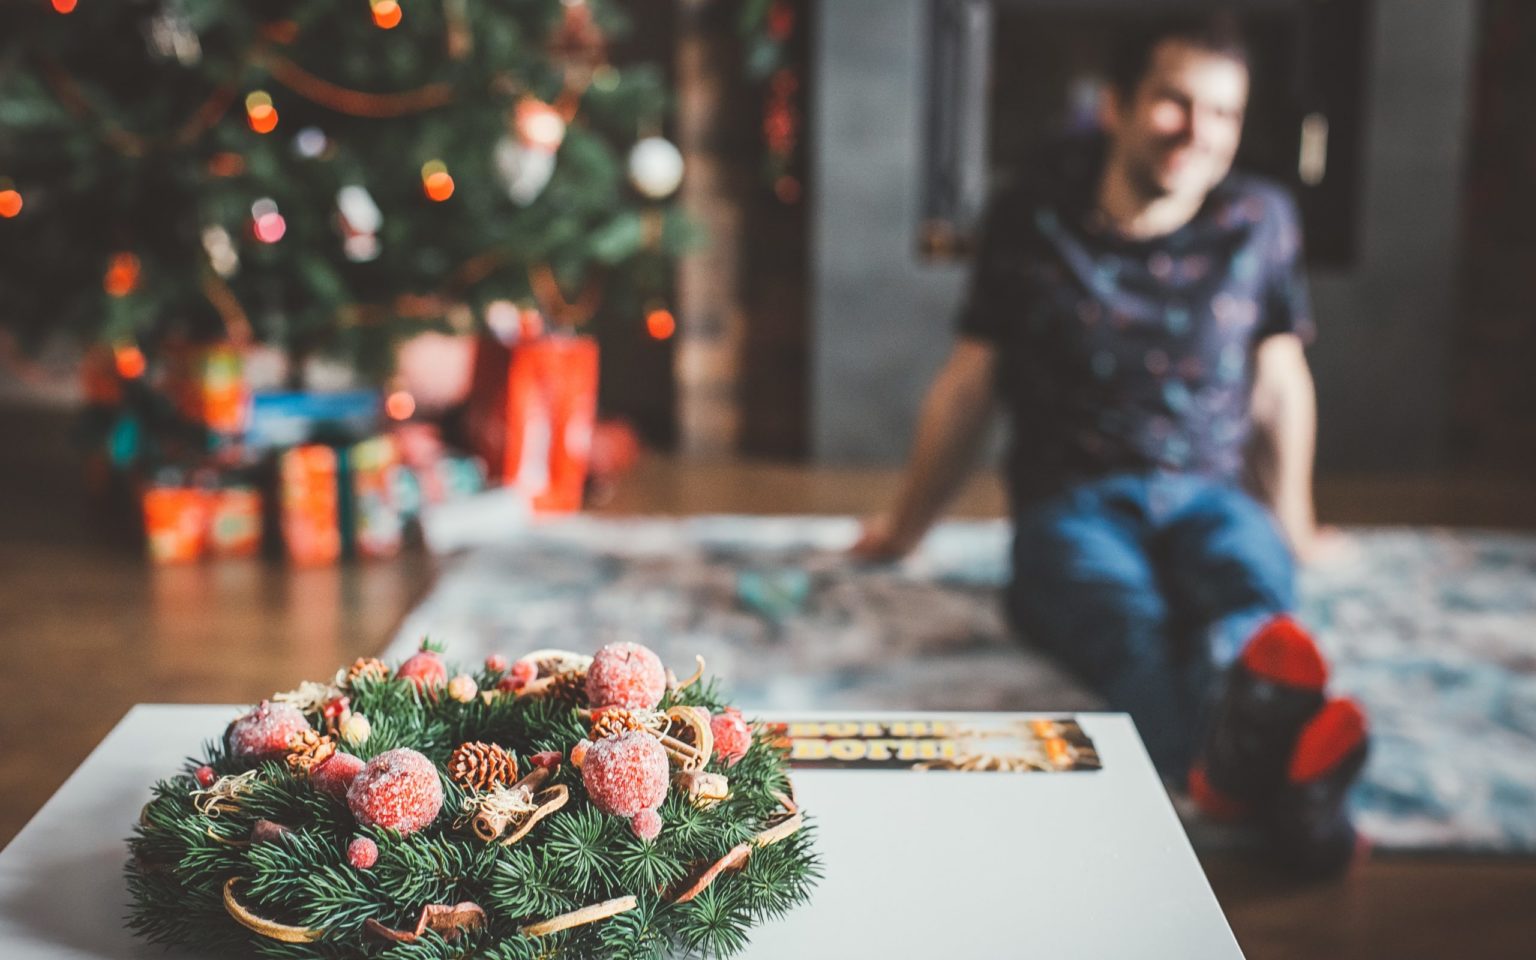 „Je dobré se zamyslet nad tím, co je pro nás skutečnou esencí Vánoc. To si ponechat a zbytek vědomě odfiltrovat,“ říká psychoterapeut Jan Vávra